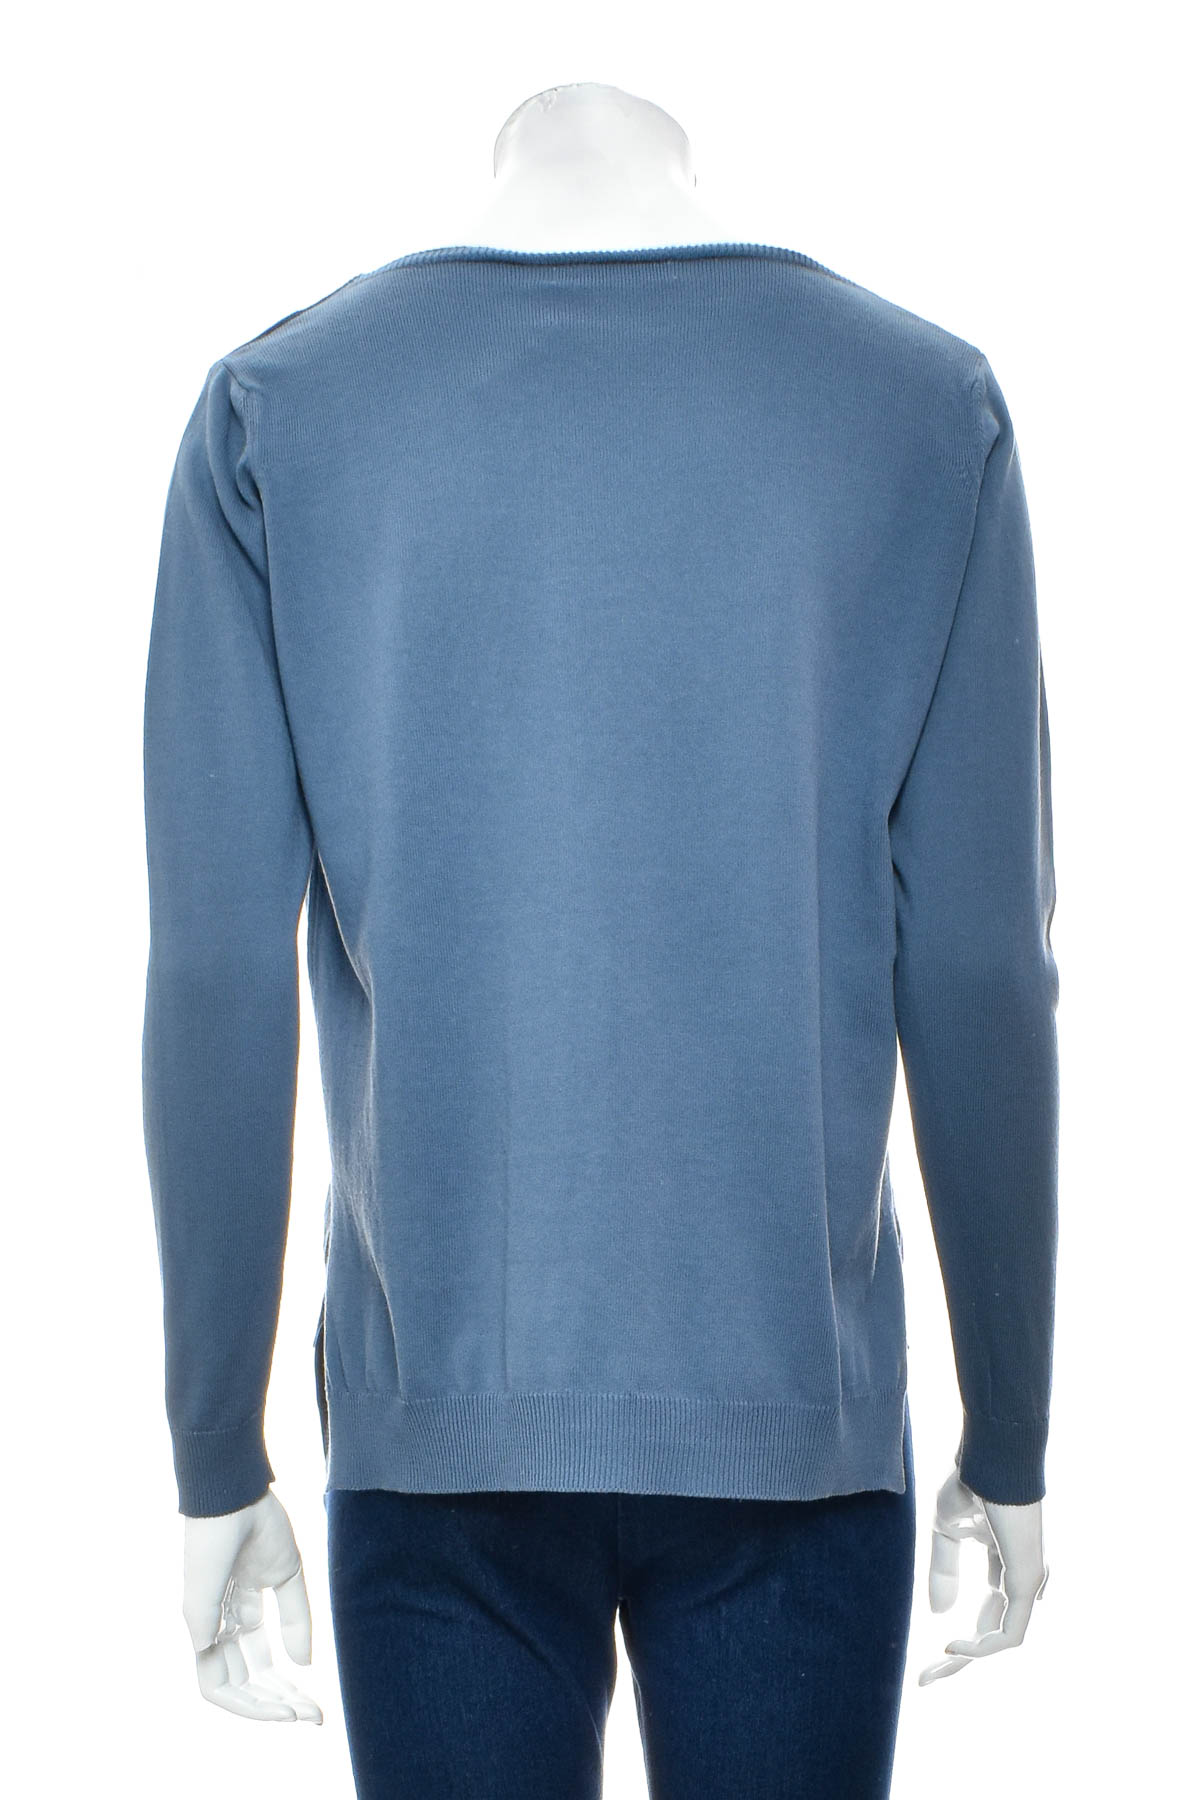 Women's sweater - Blaumax - 1